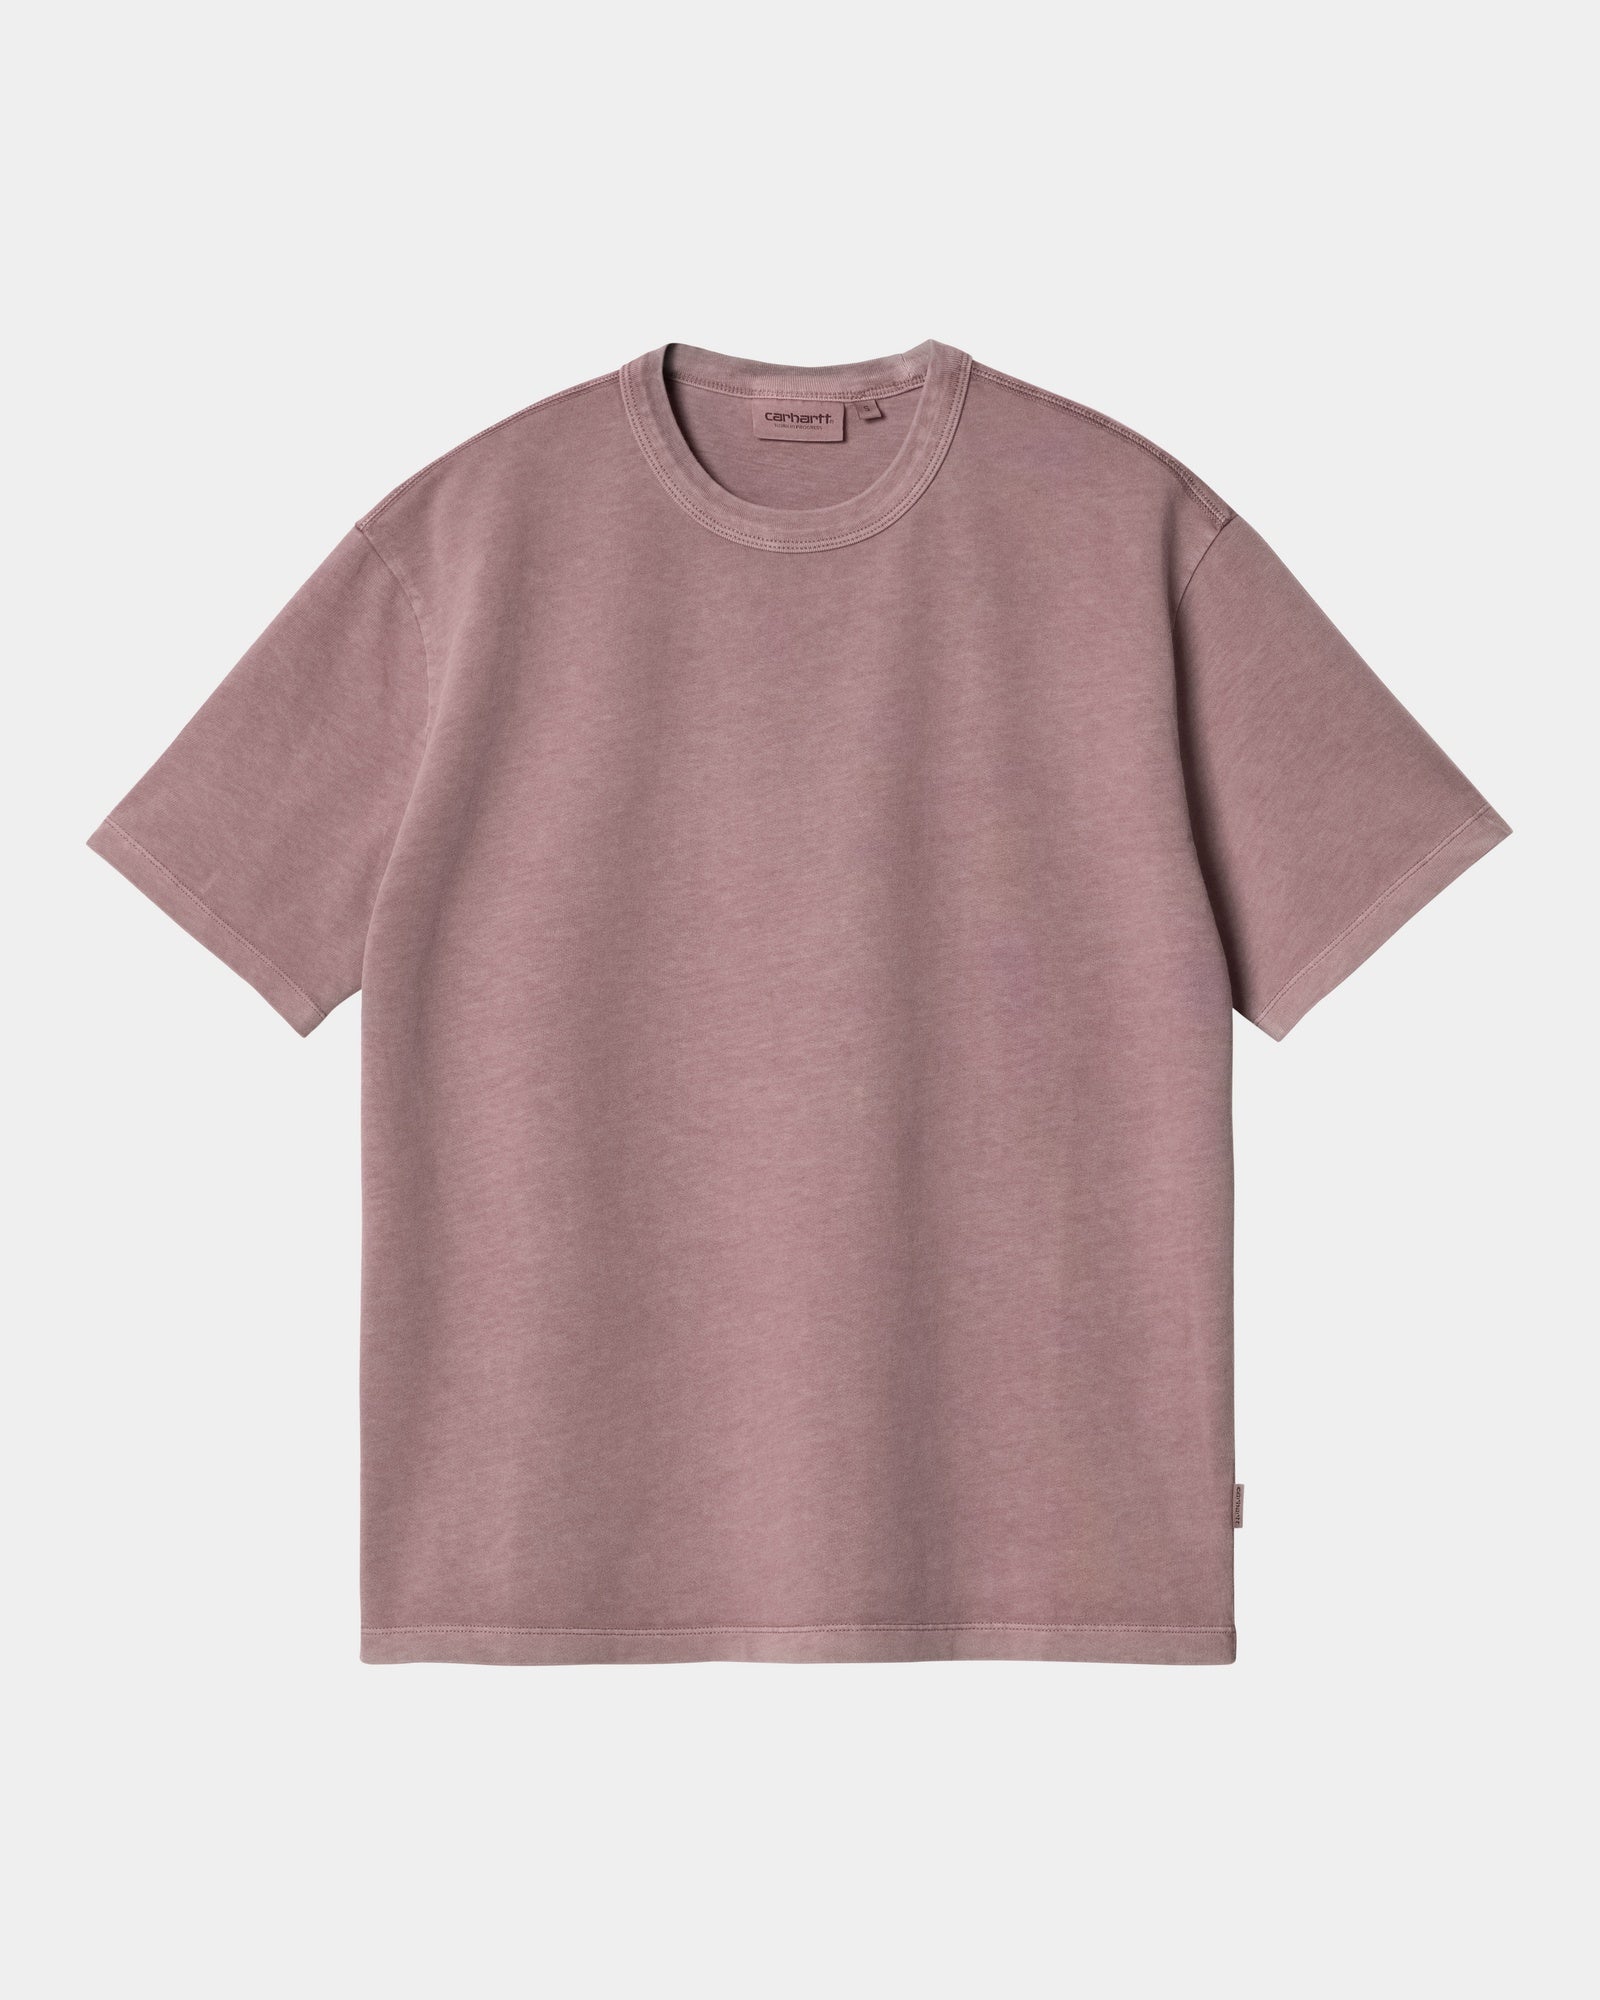 칼하트WIP Carhartt Women’s Taos T-Shirt,Daphne